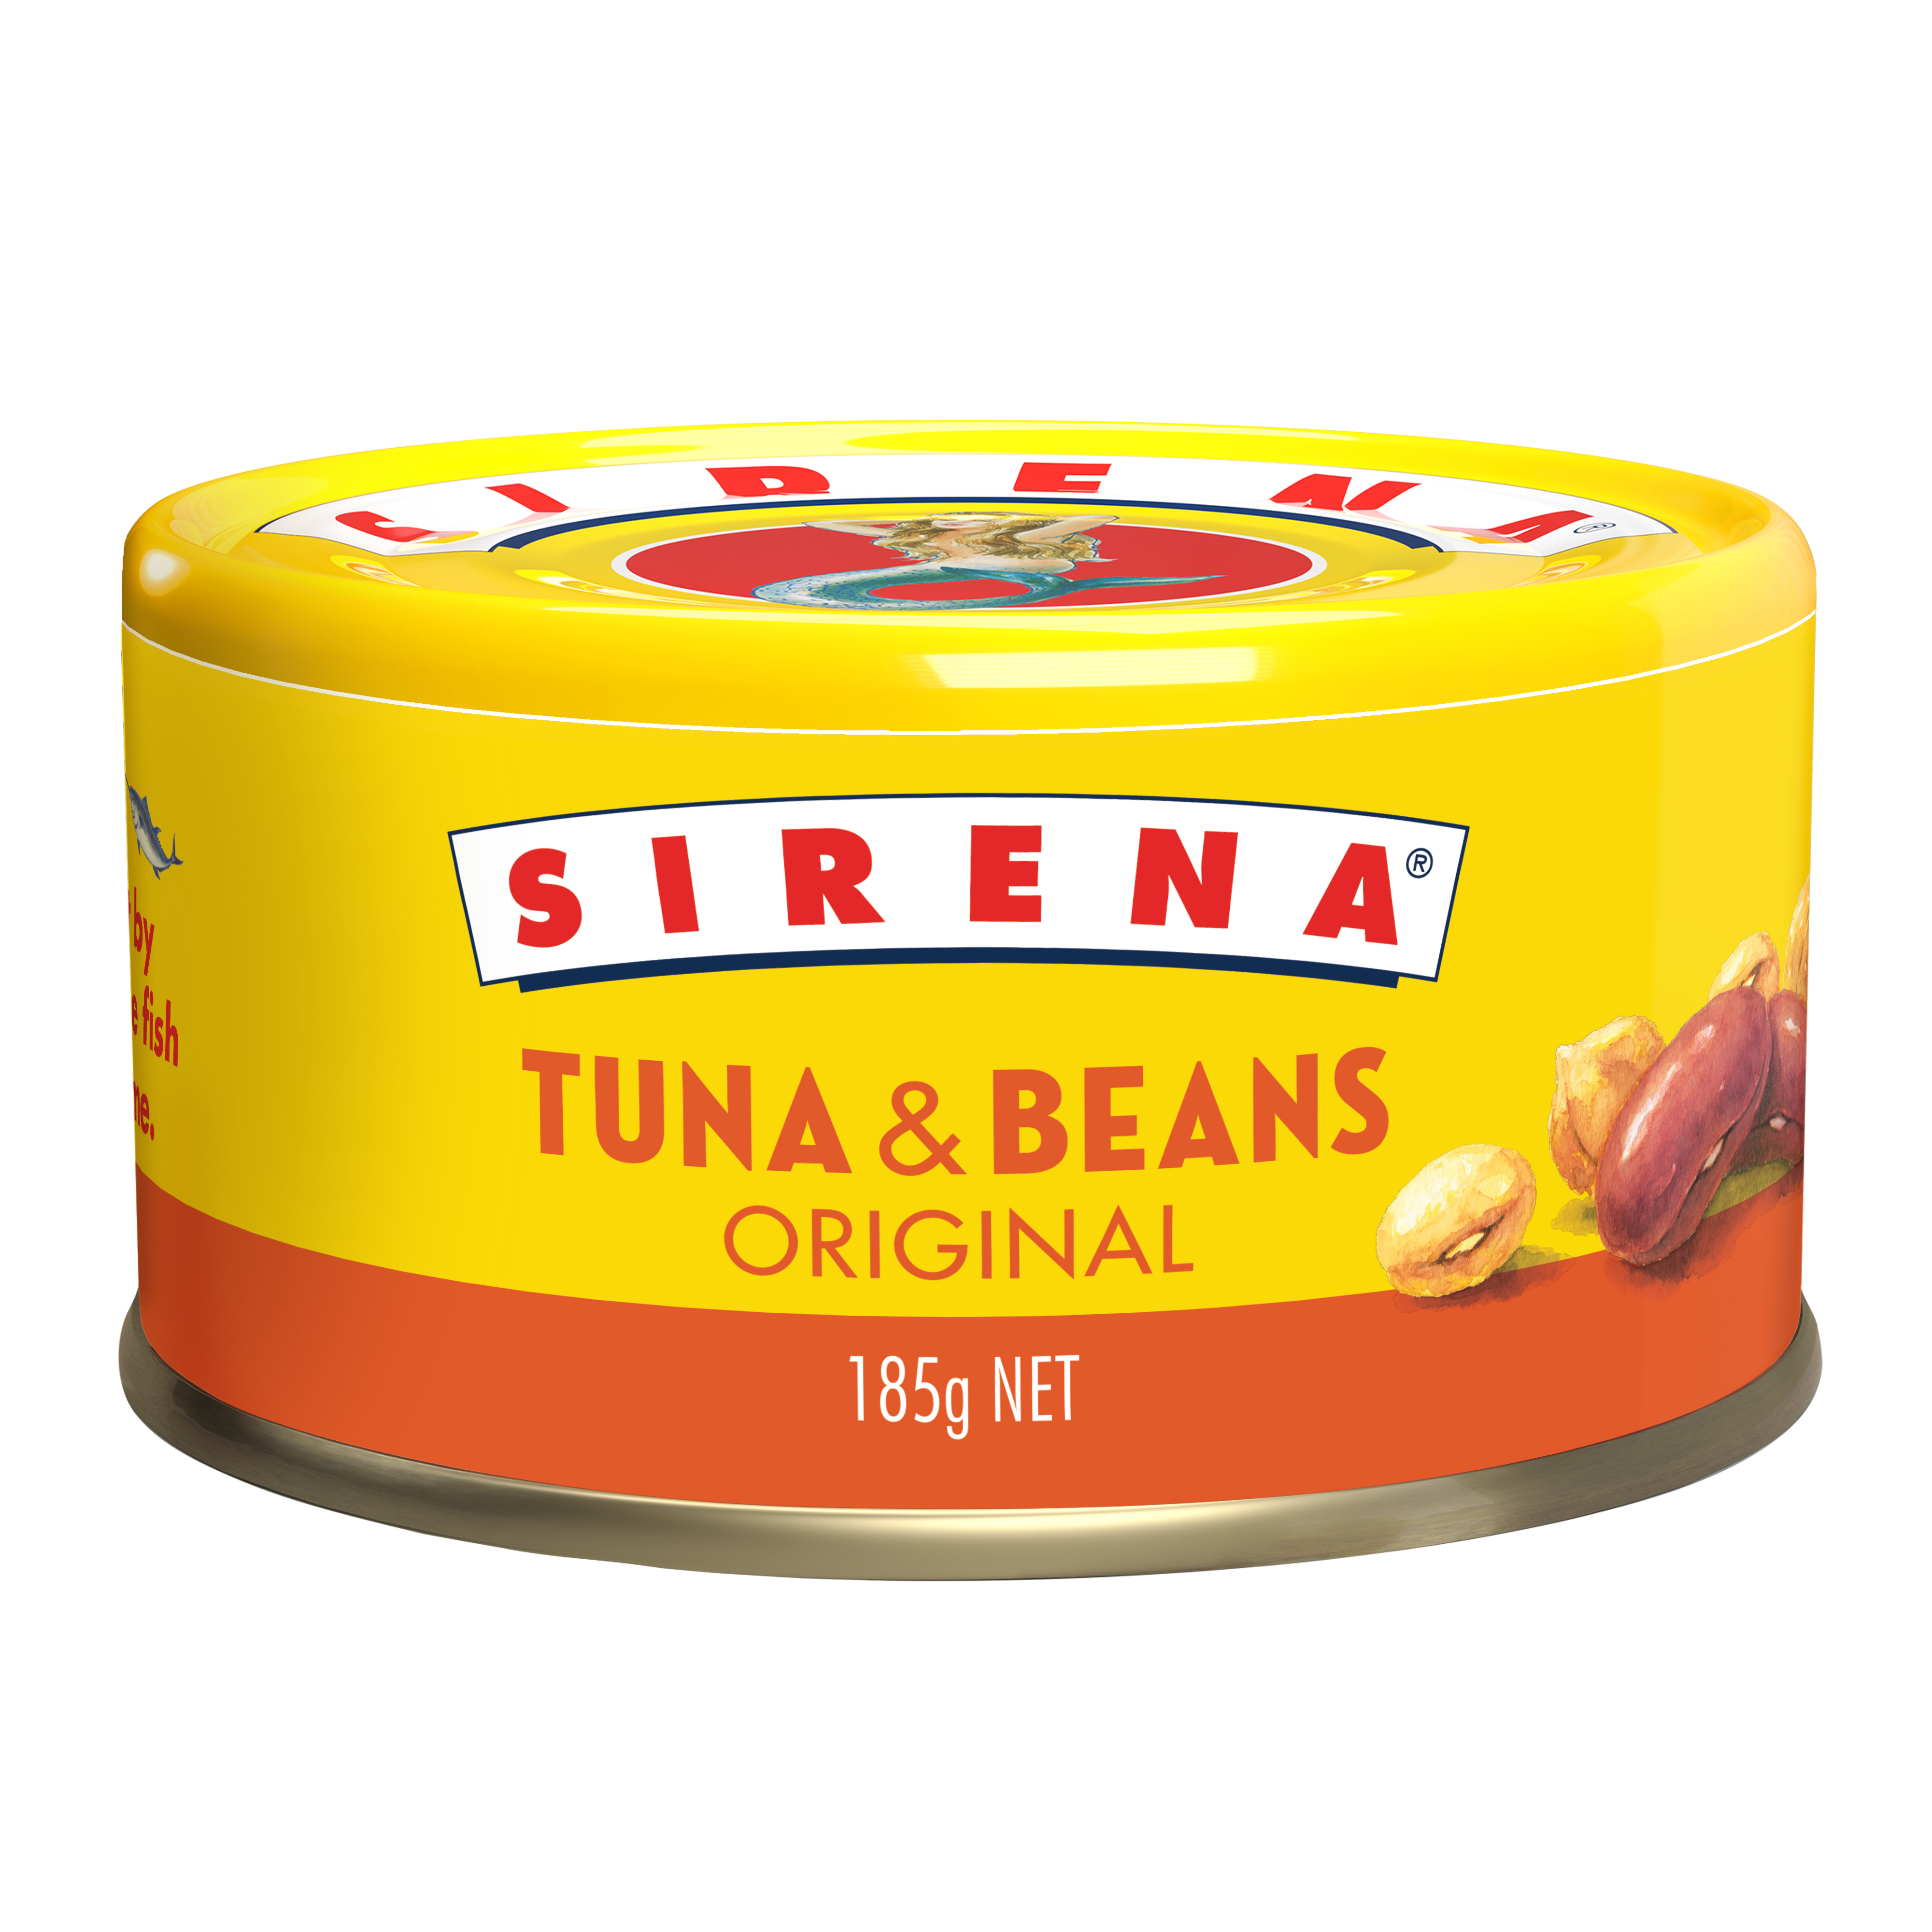 Sirena Tuna & Beans 185g Image